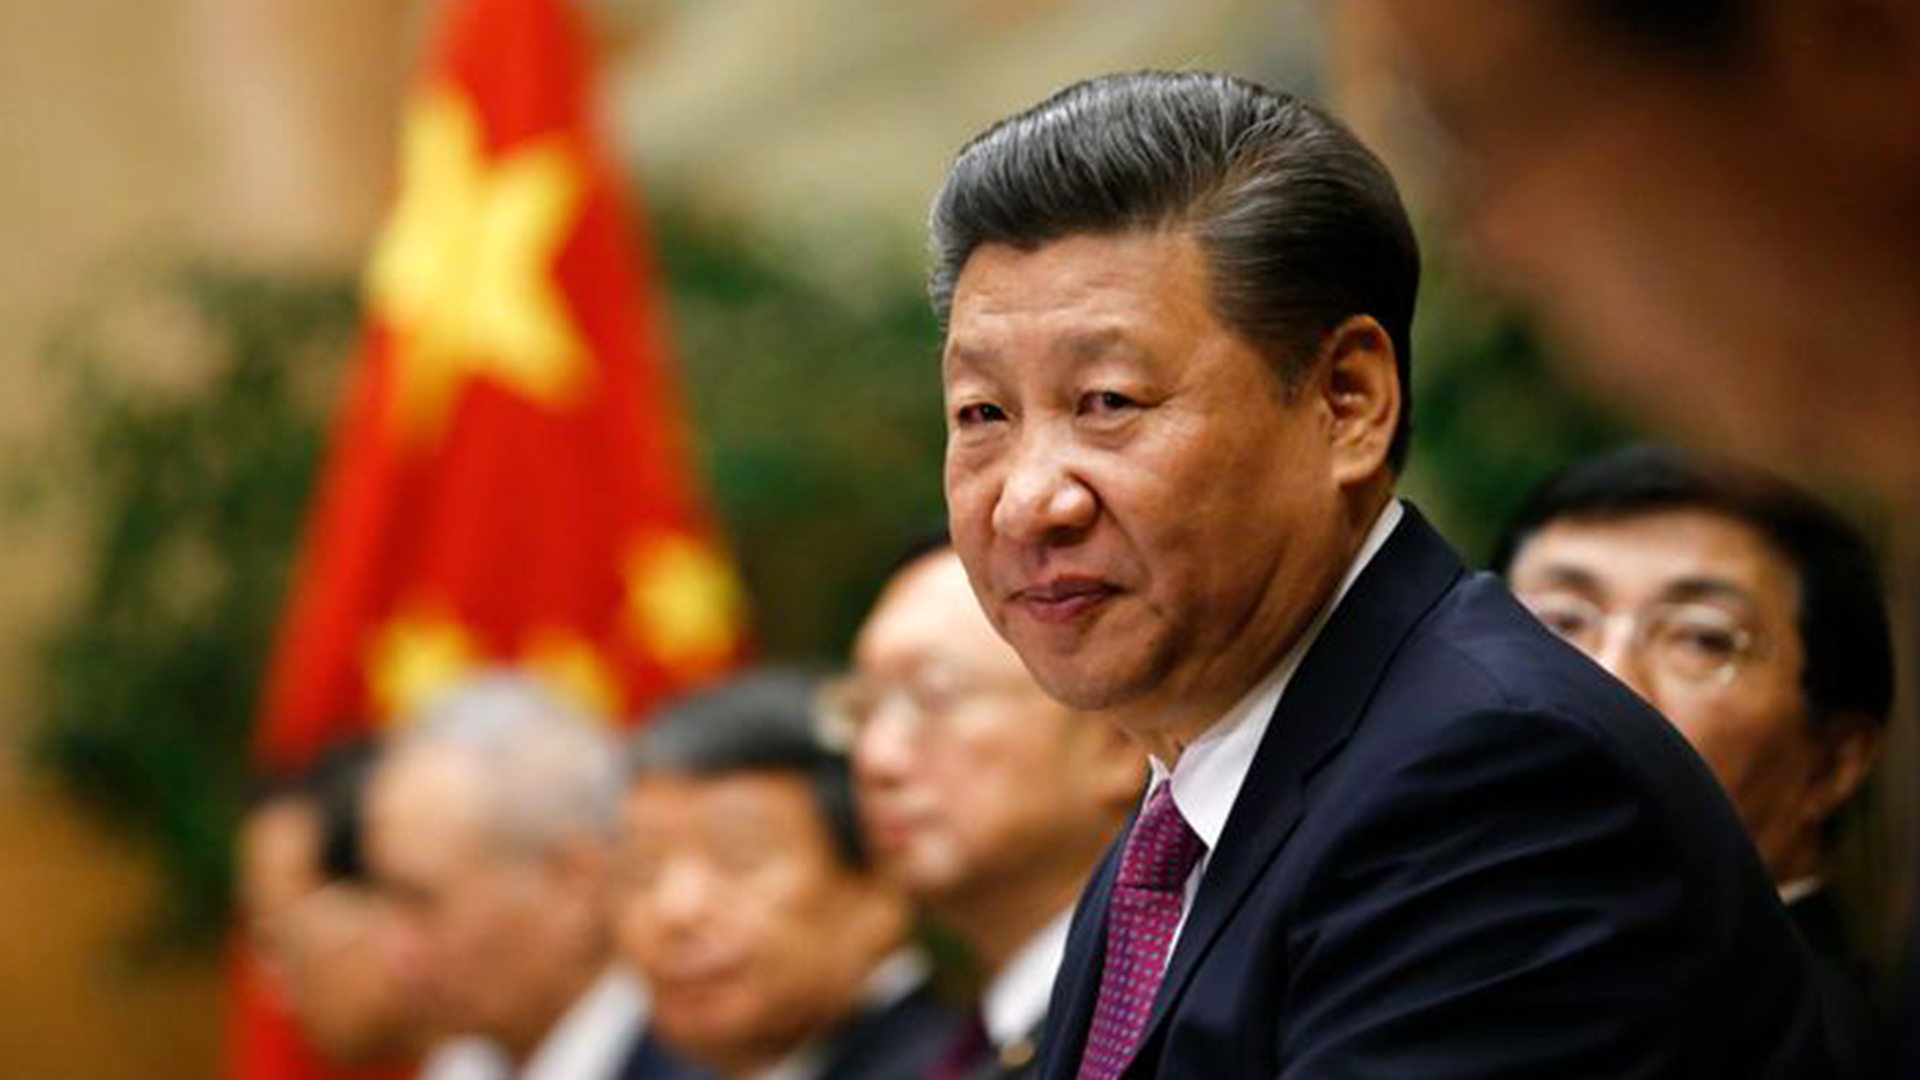 El jefe del régimen chino, Xi Jinping, quiere imponer al mundo la eficacia de las vacunas desarrolladas en su país y enfurece con los diferentes reportes que se conocen. Su gobierno lanzó una campaña contra Pfizer y Moderna en todo el mundo (Reuters)